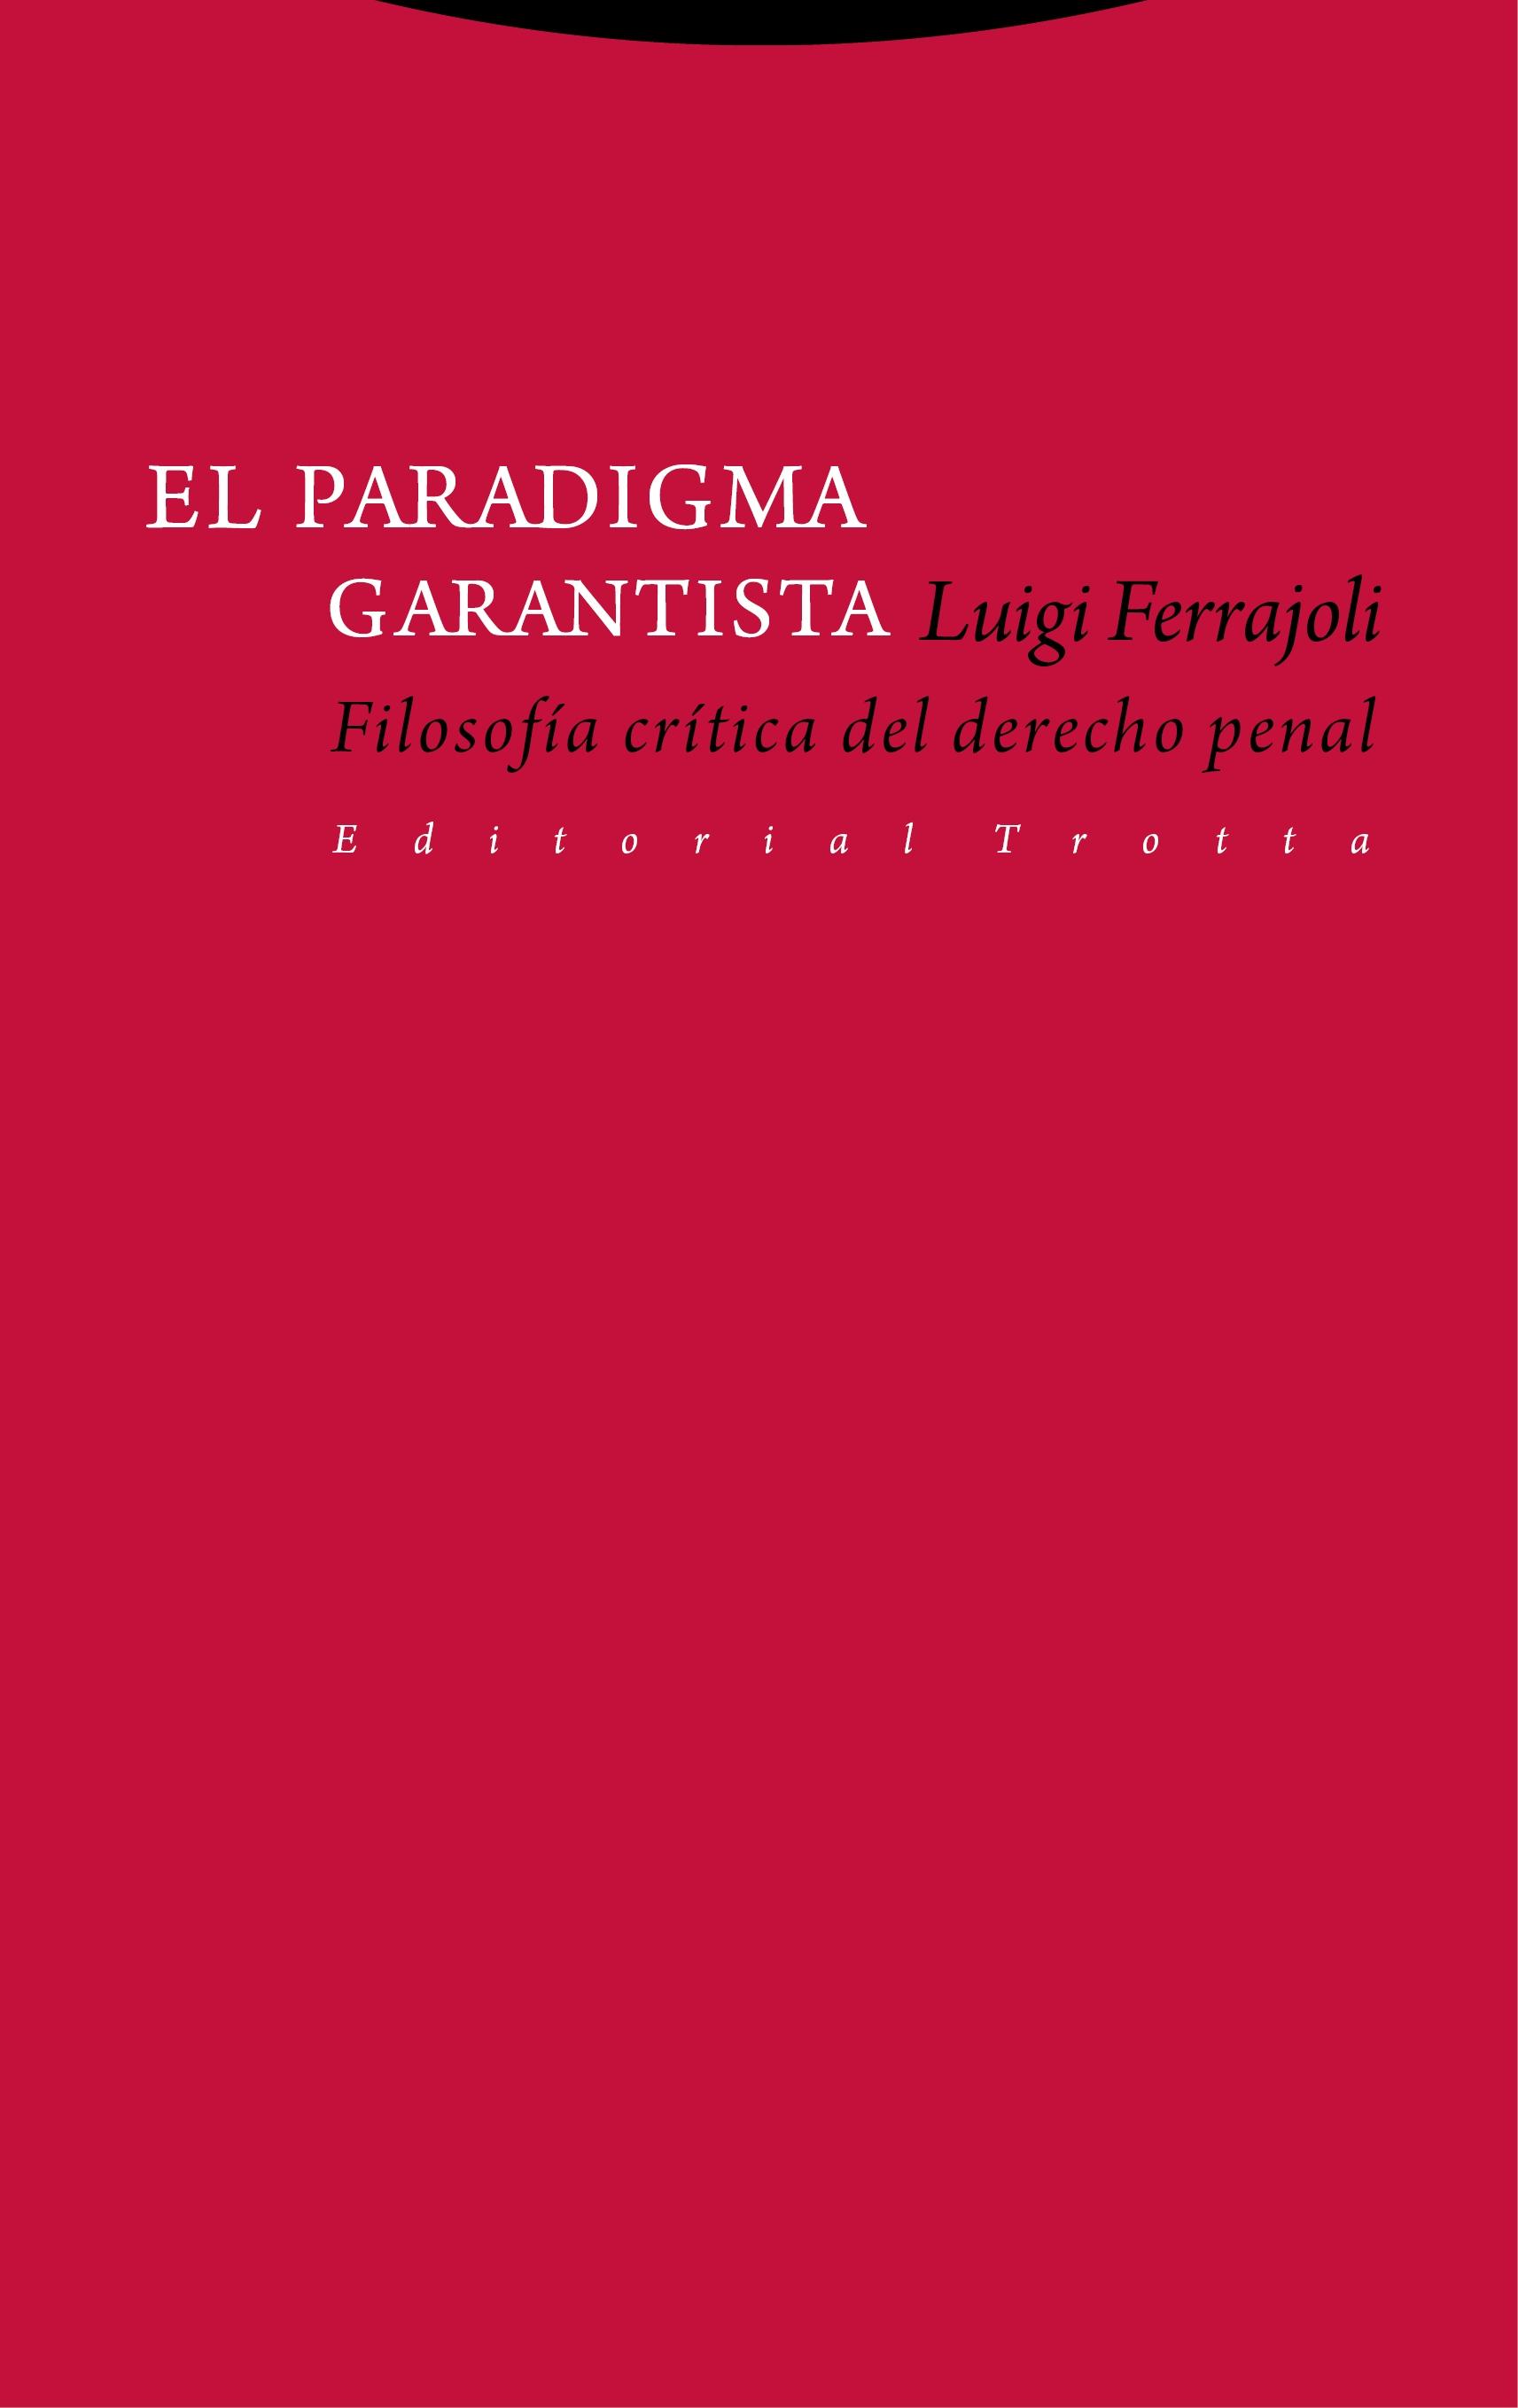 El Paradigma Garantista "Filosofía Crítica del Derecho Penal". 